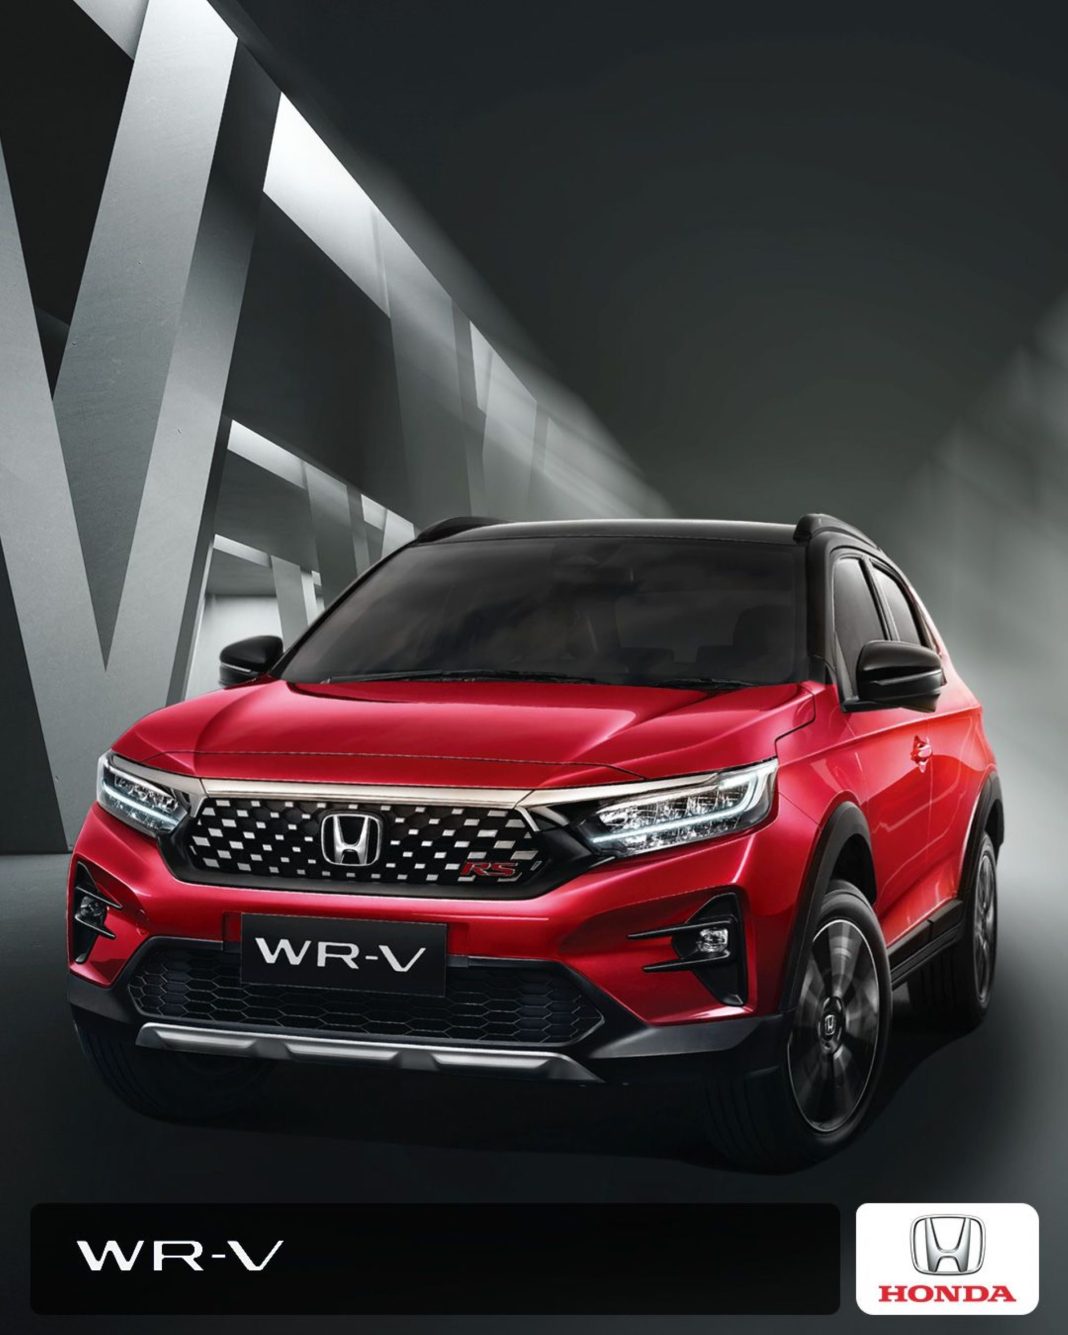 Pada bulan Januari 2023, Honda WR-V mencatat penjualan sebesar retail 1.780 unit, sekaligus menjadi market leader di segmen Small SUV dengan pangsa pasar sebesar 42%